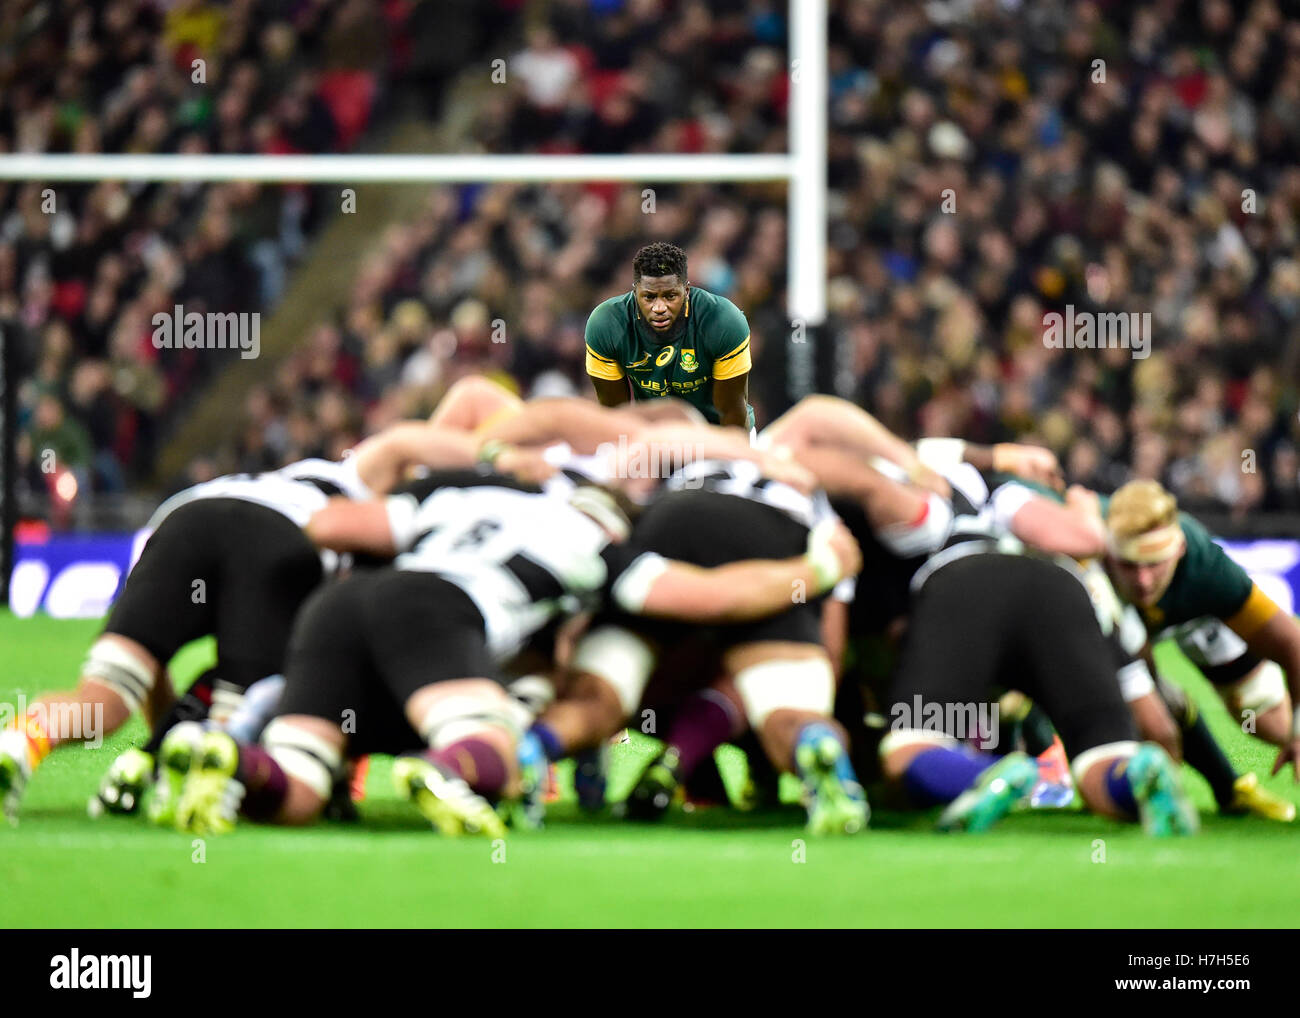 Londra, Inghilterra - 5 Novembre, 2016: Jamba Ulengo mantiene un occhio sulla palla durante la partita di rugby tra i barbari vs Sud Africa allo Stadio di Wembley. Credito: Taka Wu/Alamy Live News Foto Stock